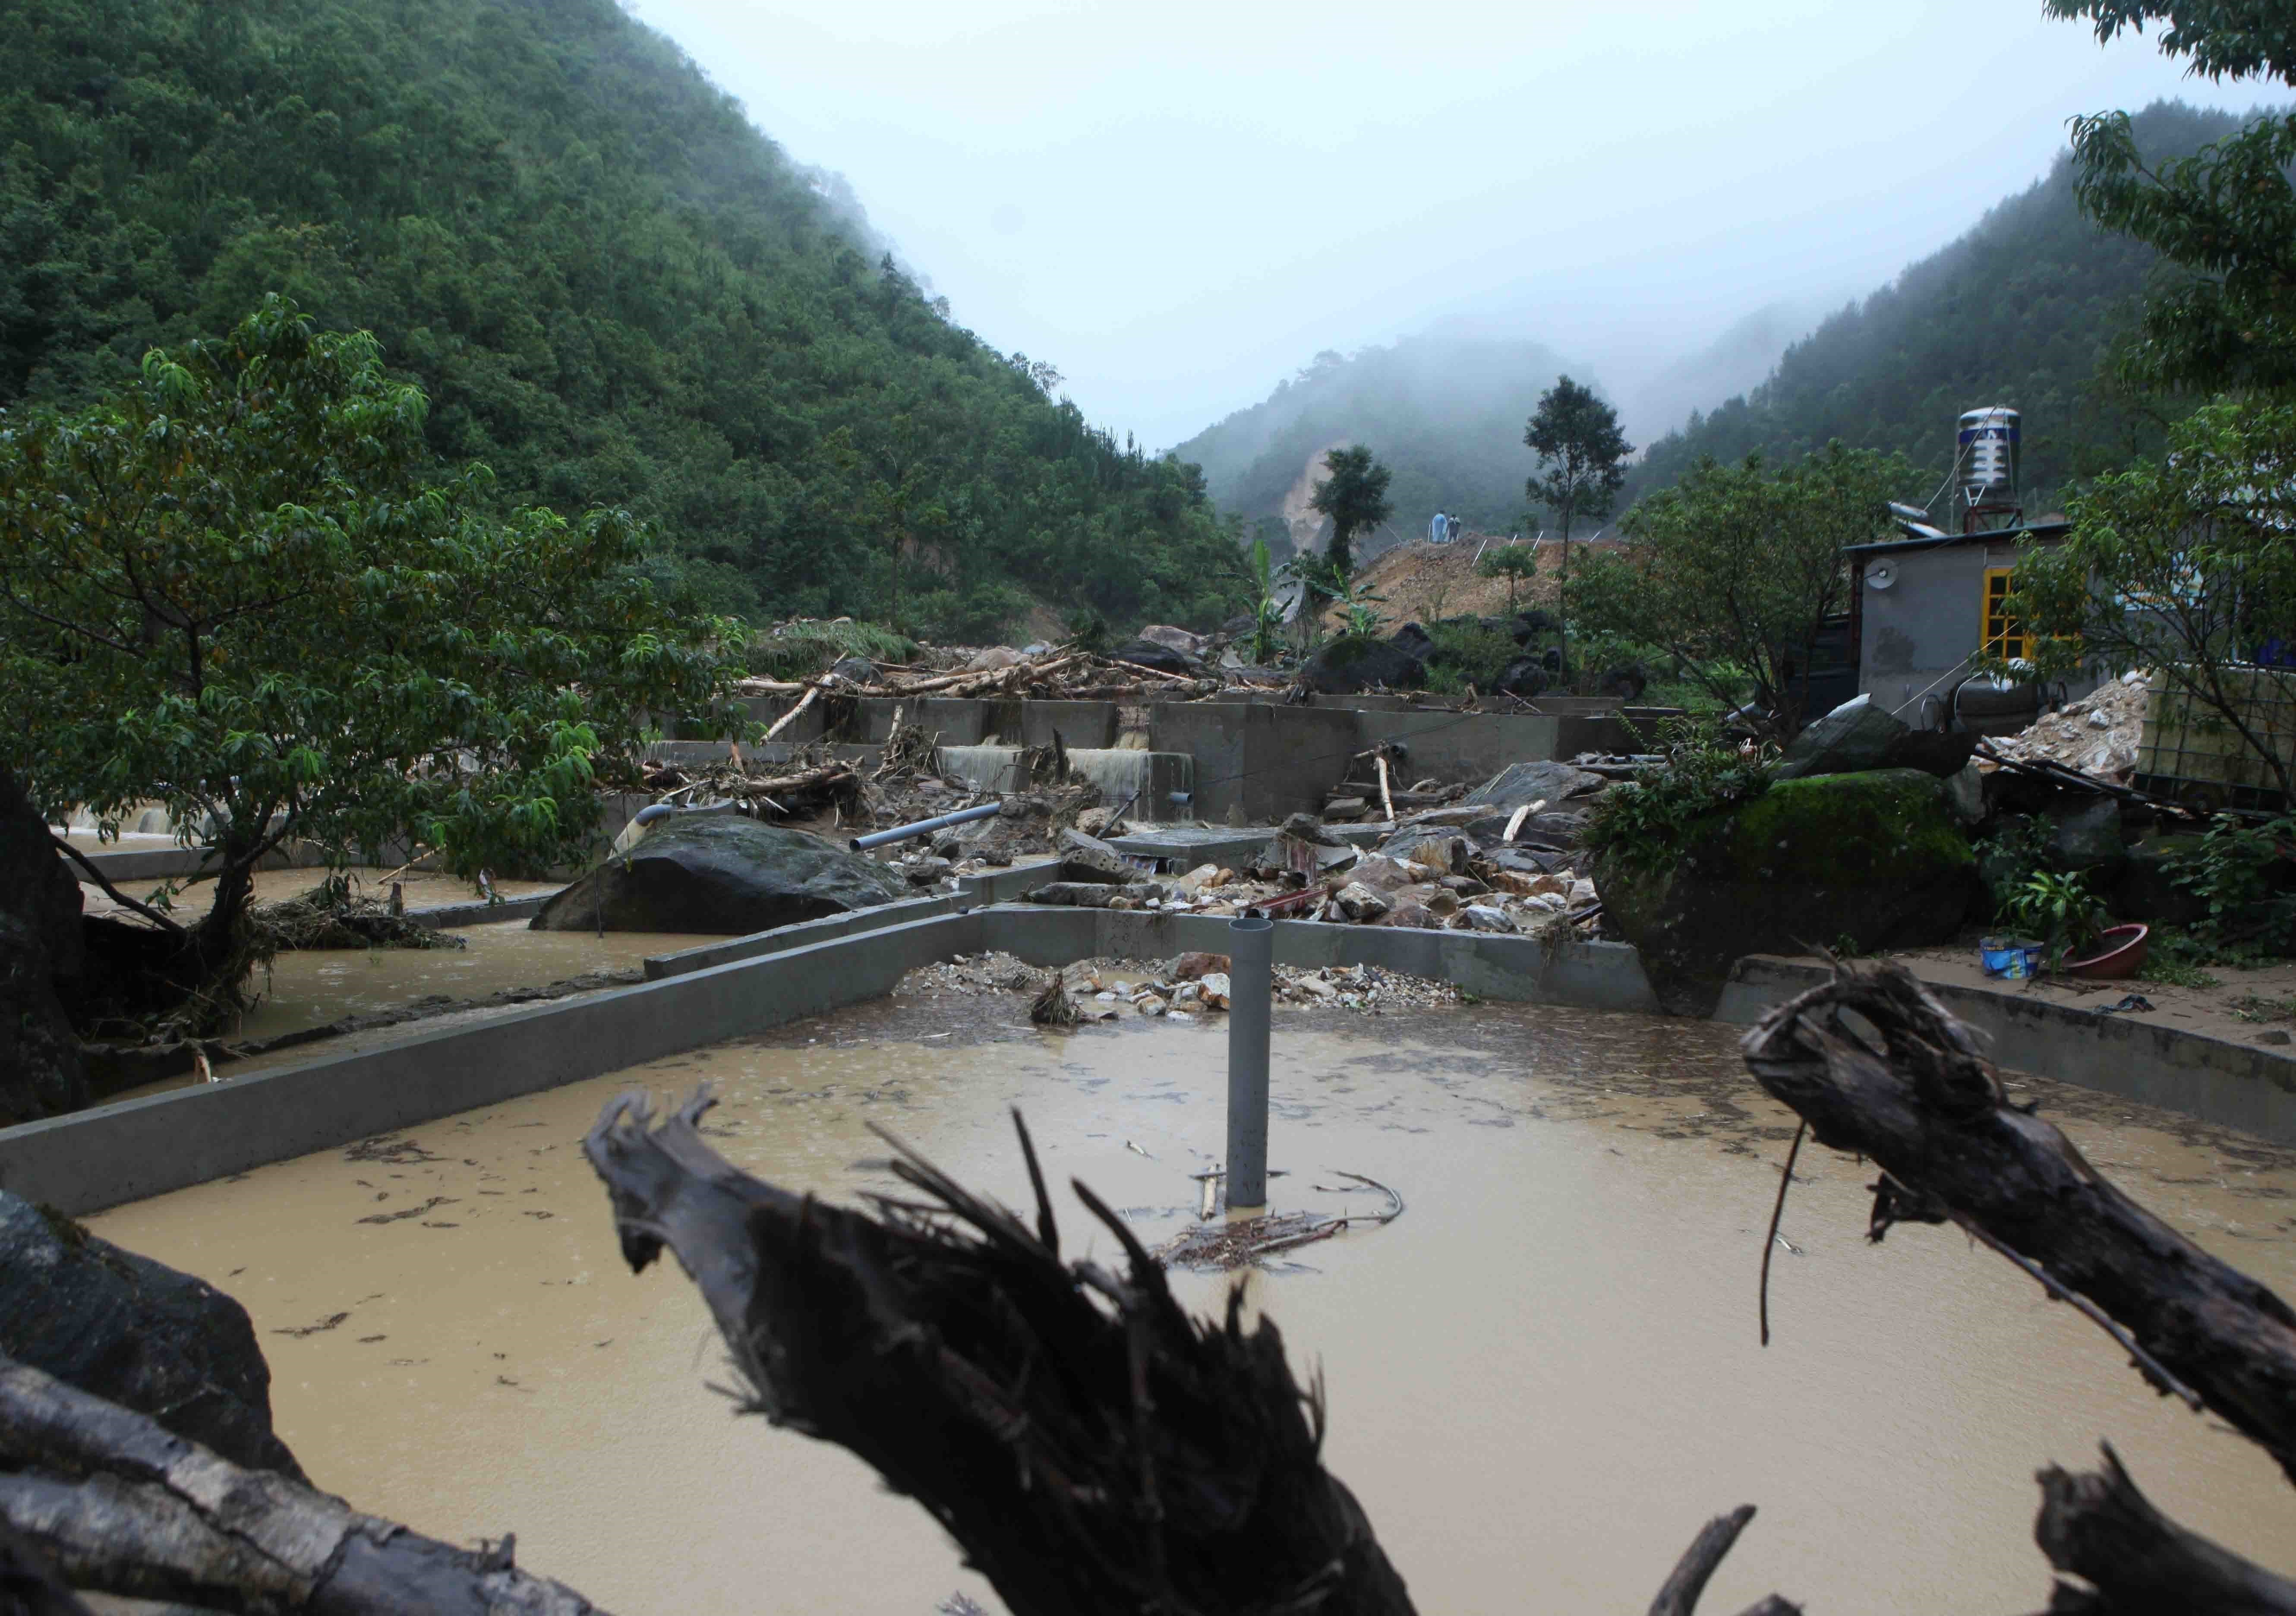 Qutres fermes aquacoles dans le district de Tam Duong ont été
totalement détruites